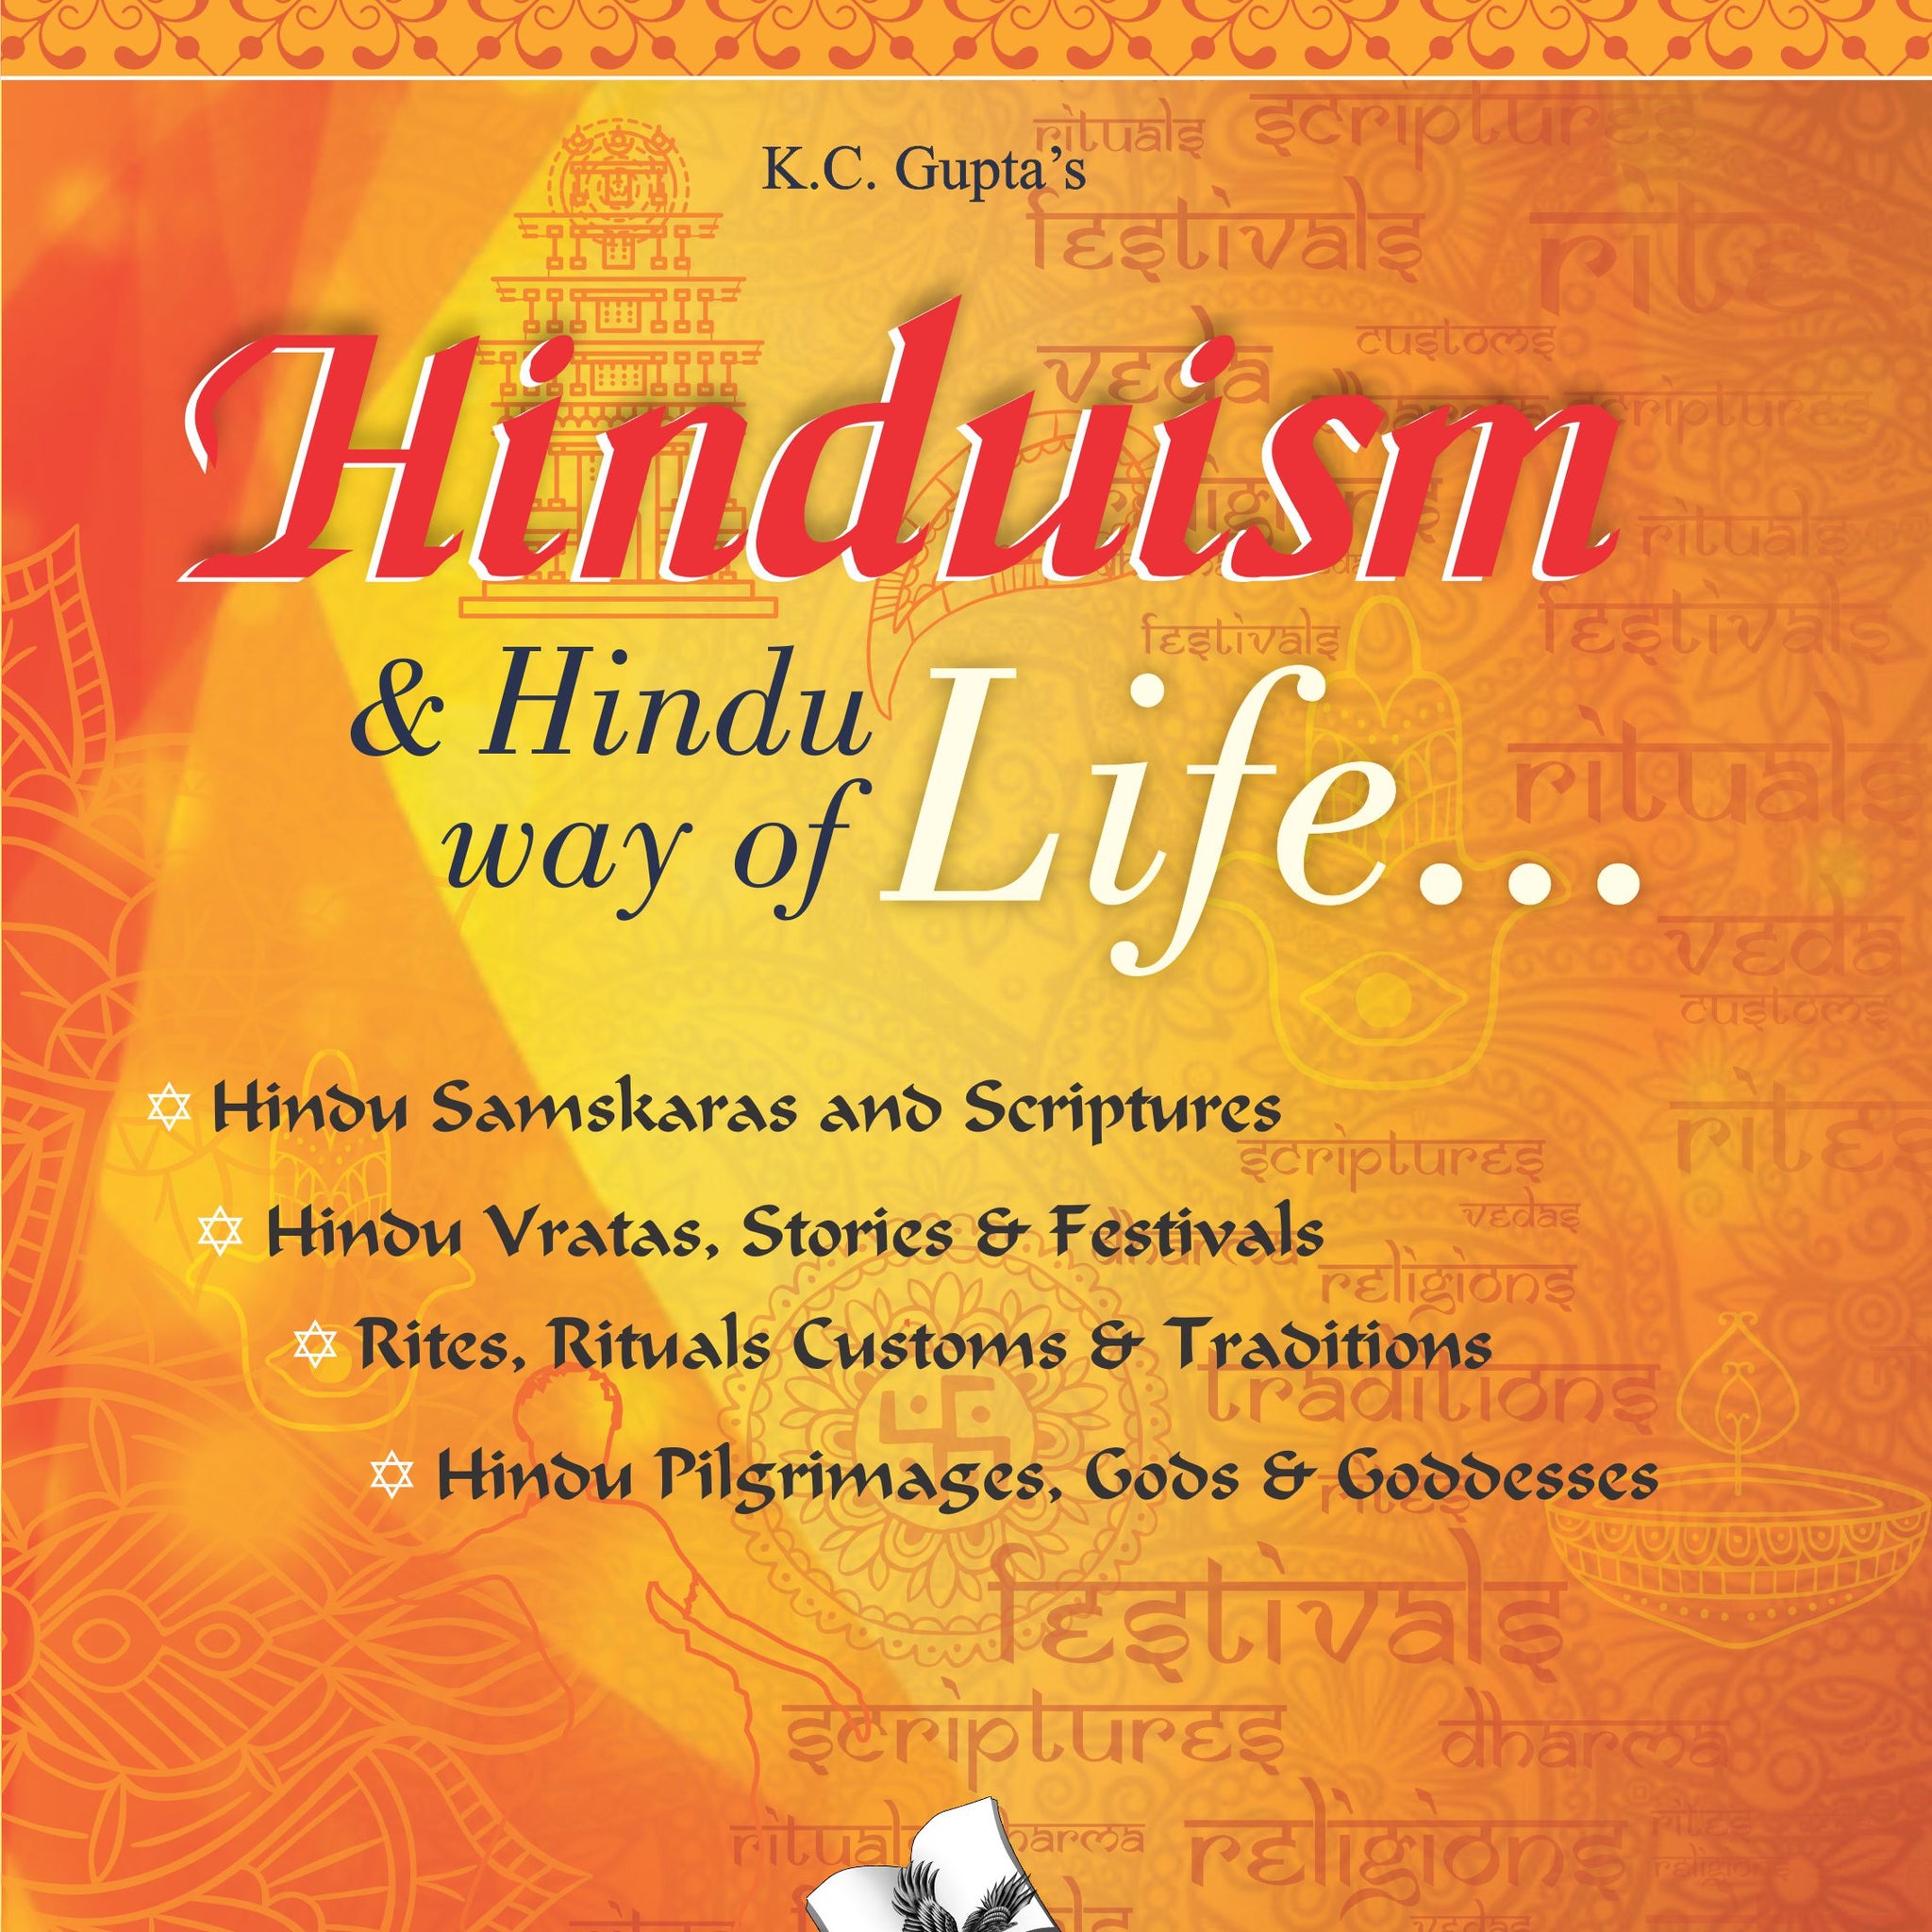 Hinduism and Hindu way of Life